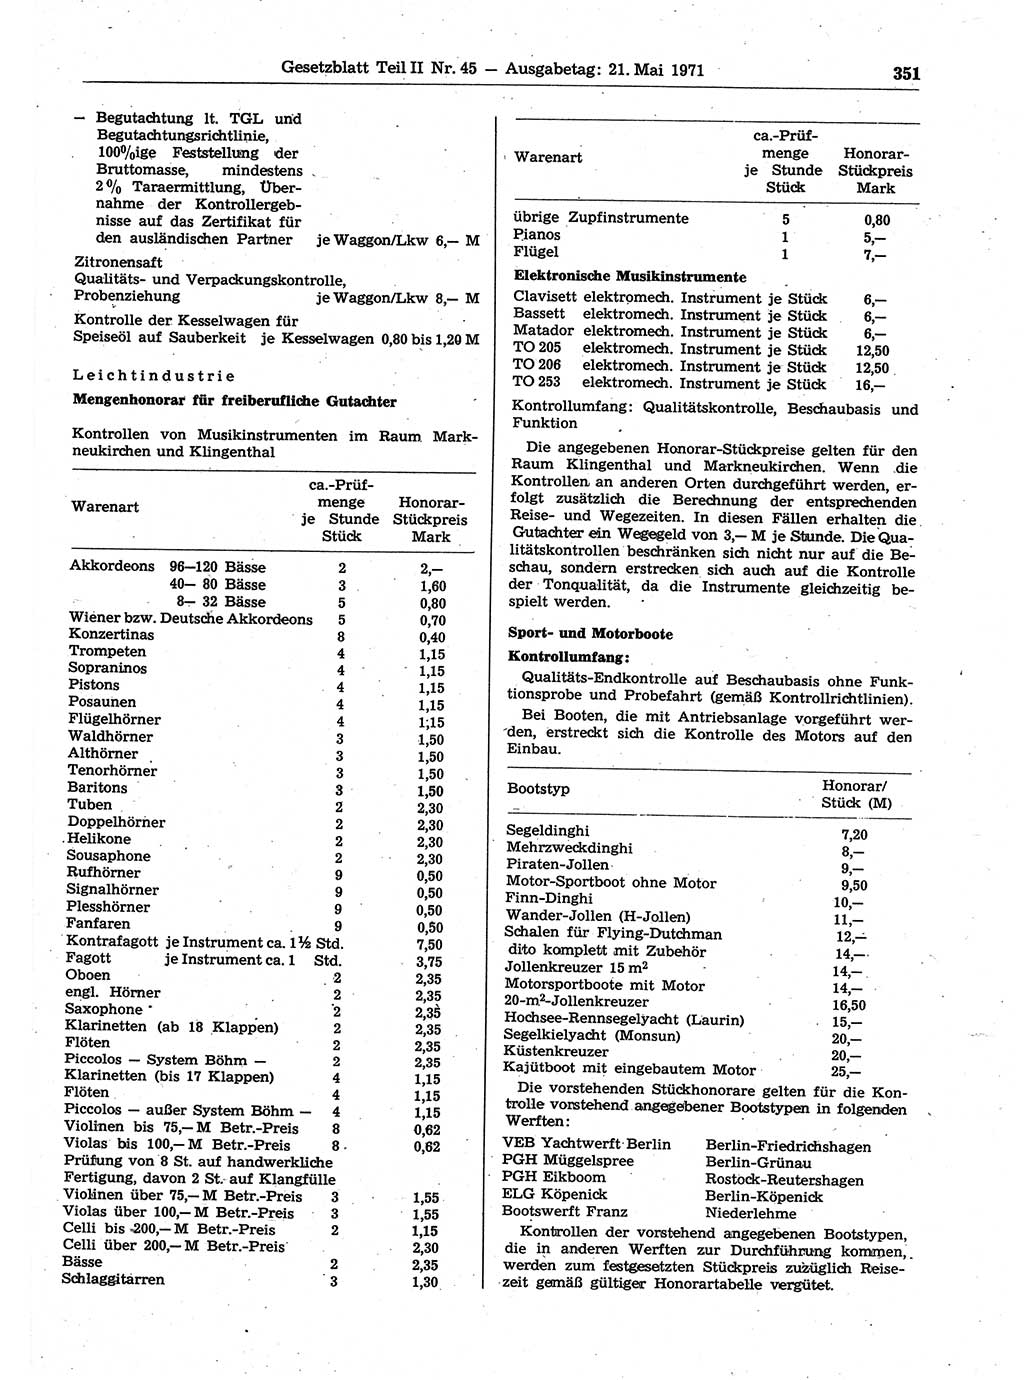 Gesetzblatt (GBl.) der Deutschen Demokratischen Republik (DDR) Teil ⅠⅠ 1971, Seite 351 (GBl. DDR ⅠⅠ 1971, S. 351)